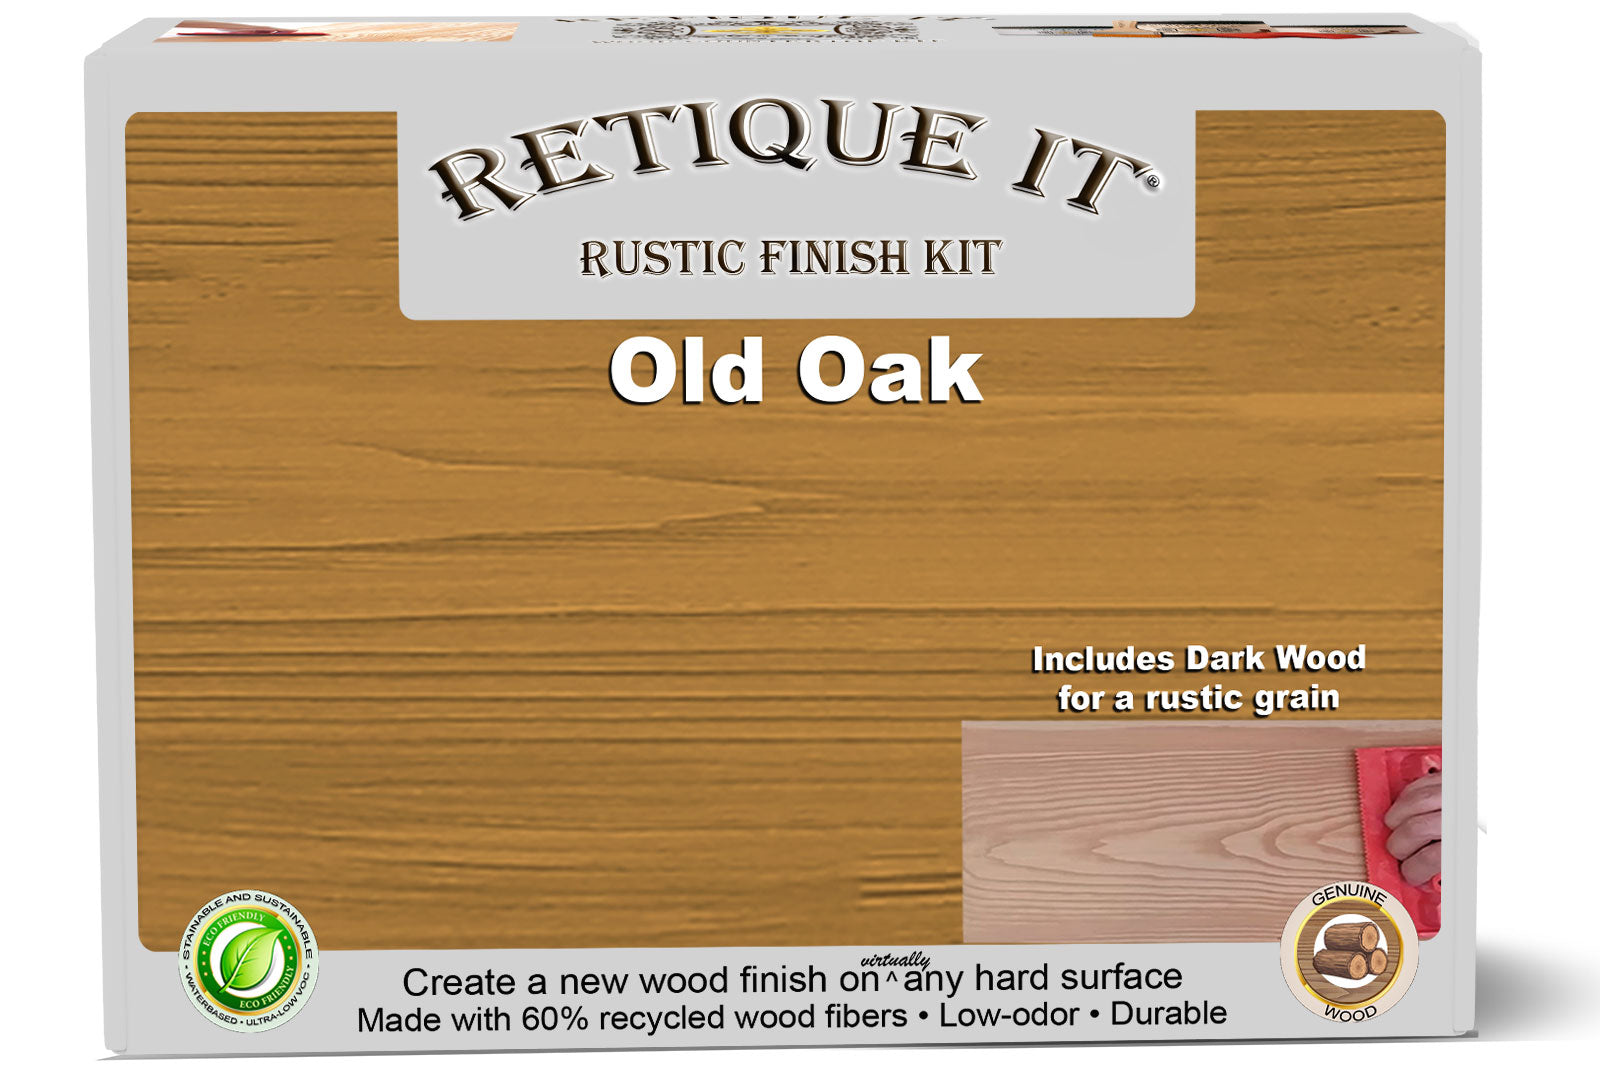 Rustic Finish Kit - Old Oak